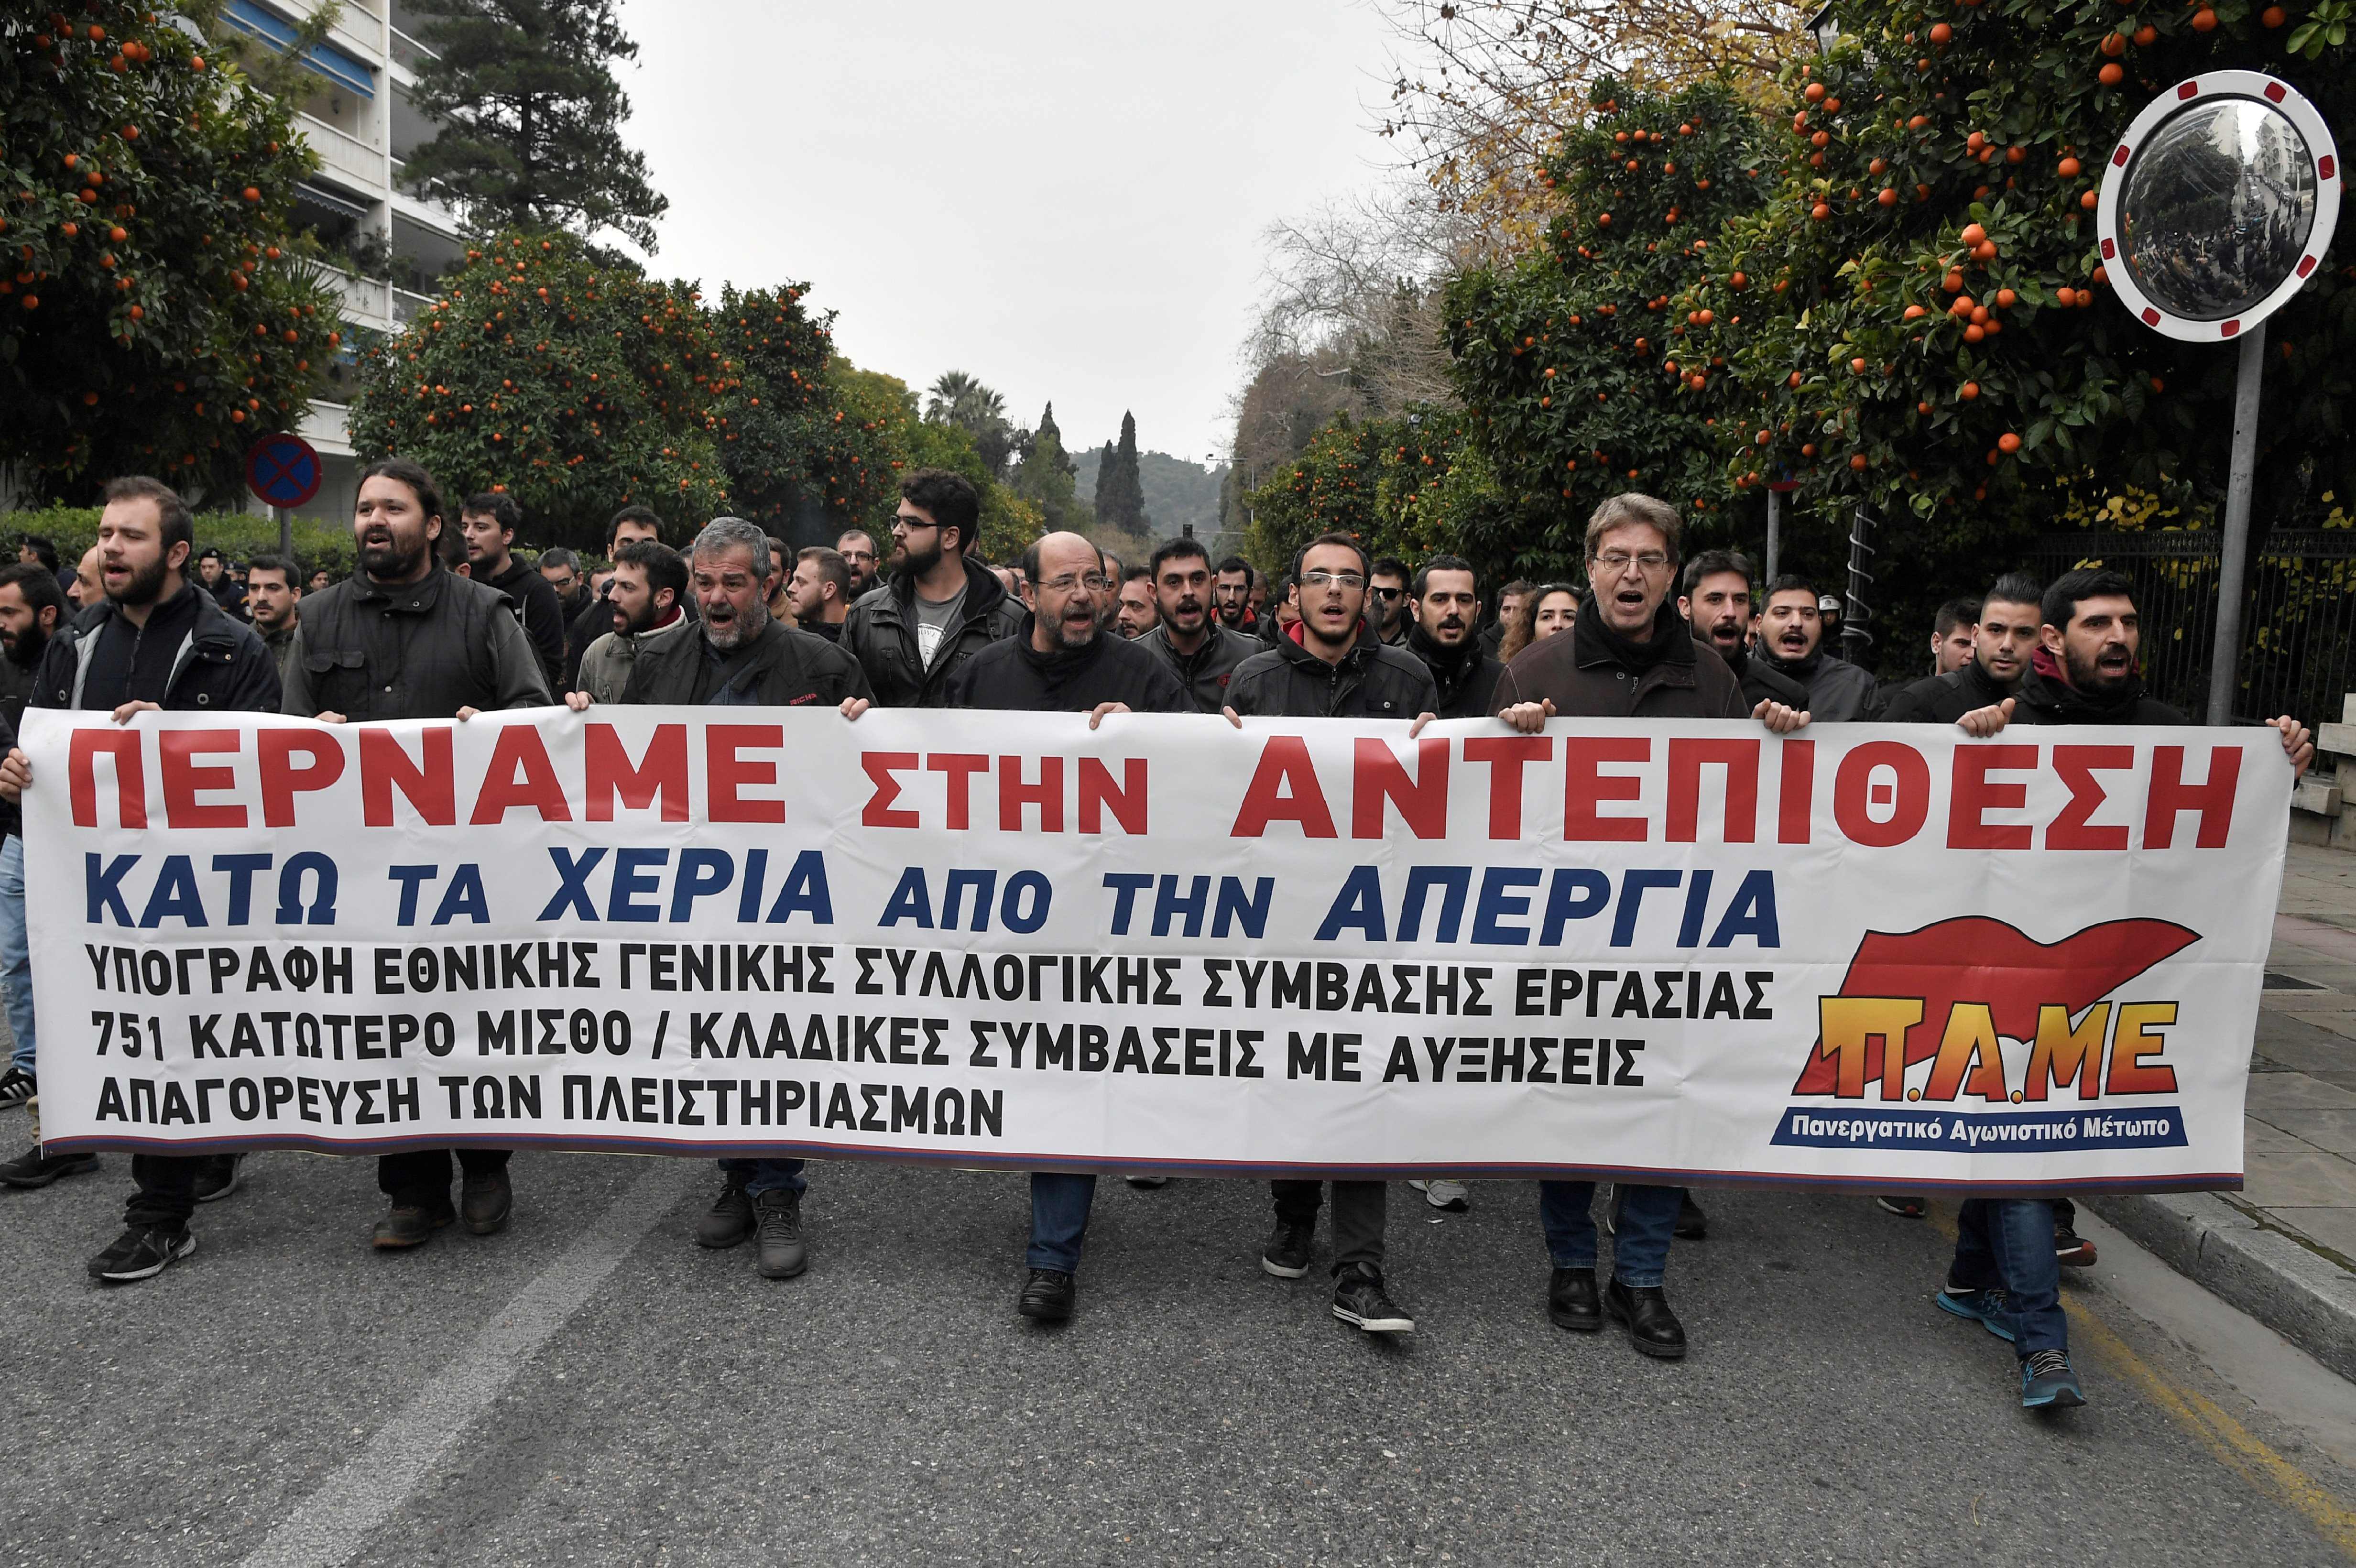 لافتات مناهضة لصندوق النقد الدولى فى اليونان